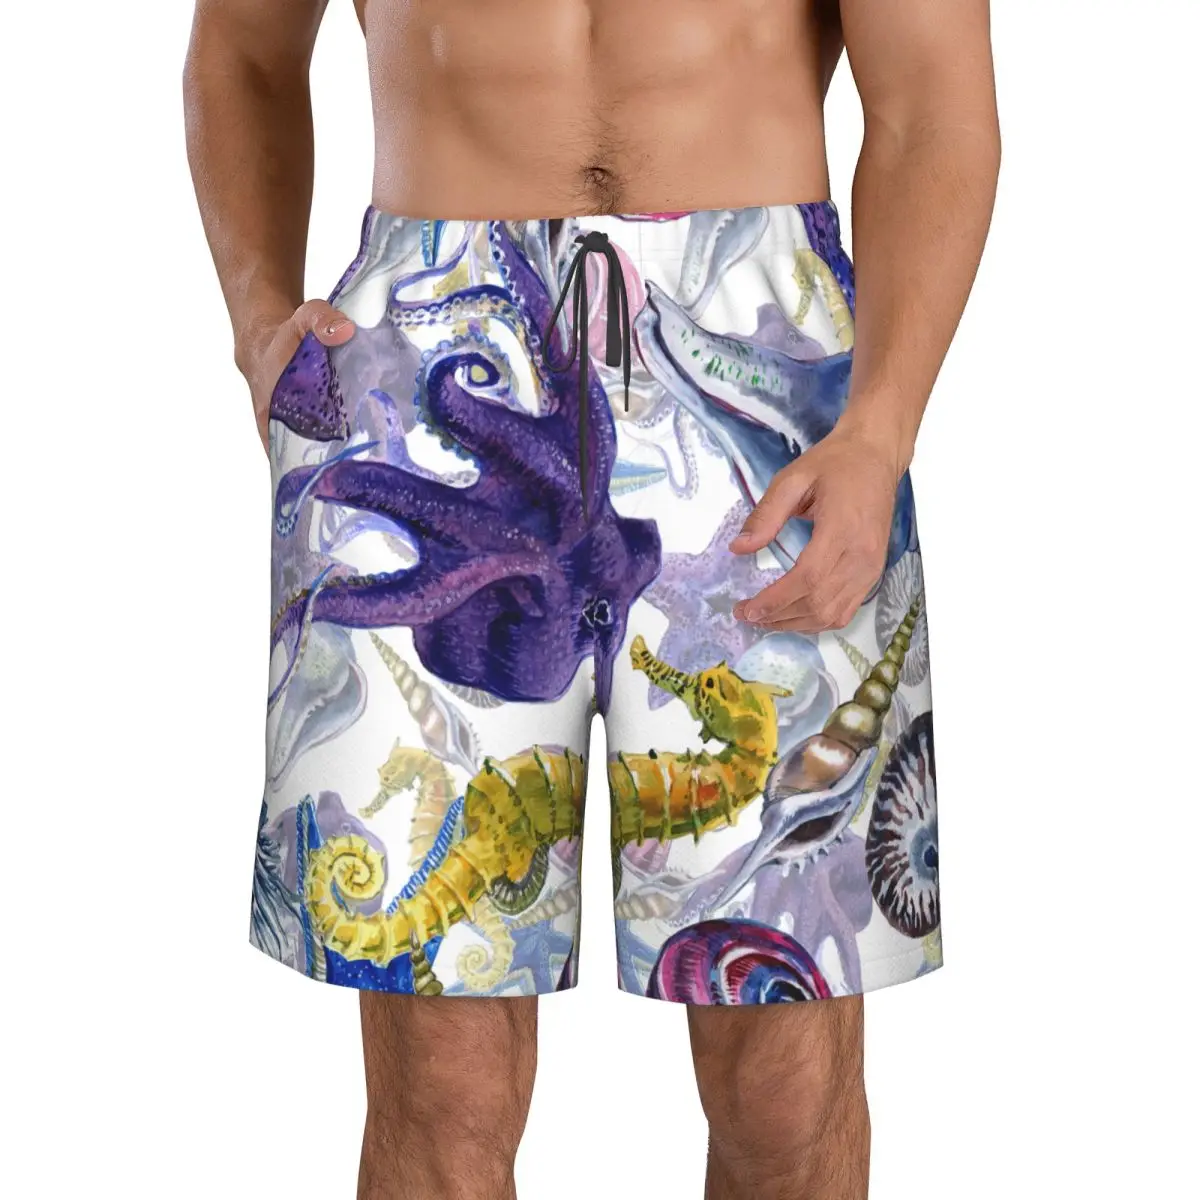 גברים חוף קצר מהיר ייבוש שחייה המטען בצבעי מים חוף צדפים יצורים תת בגדי ים בגדי ים בגד ים קצר - 1